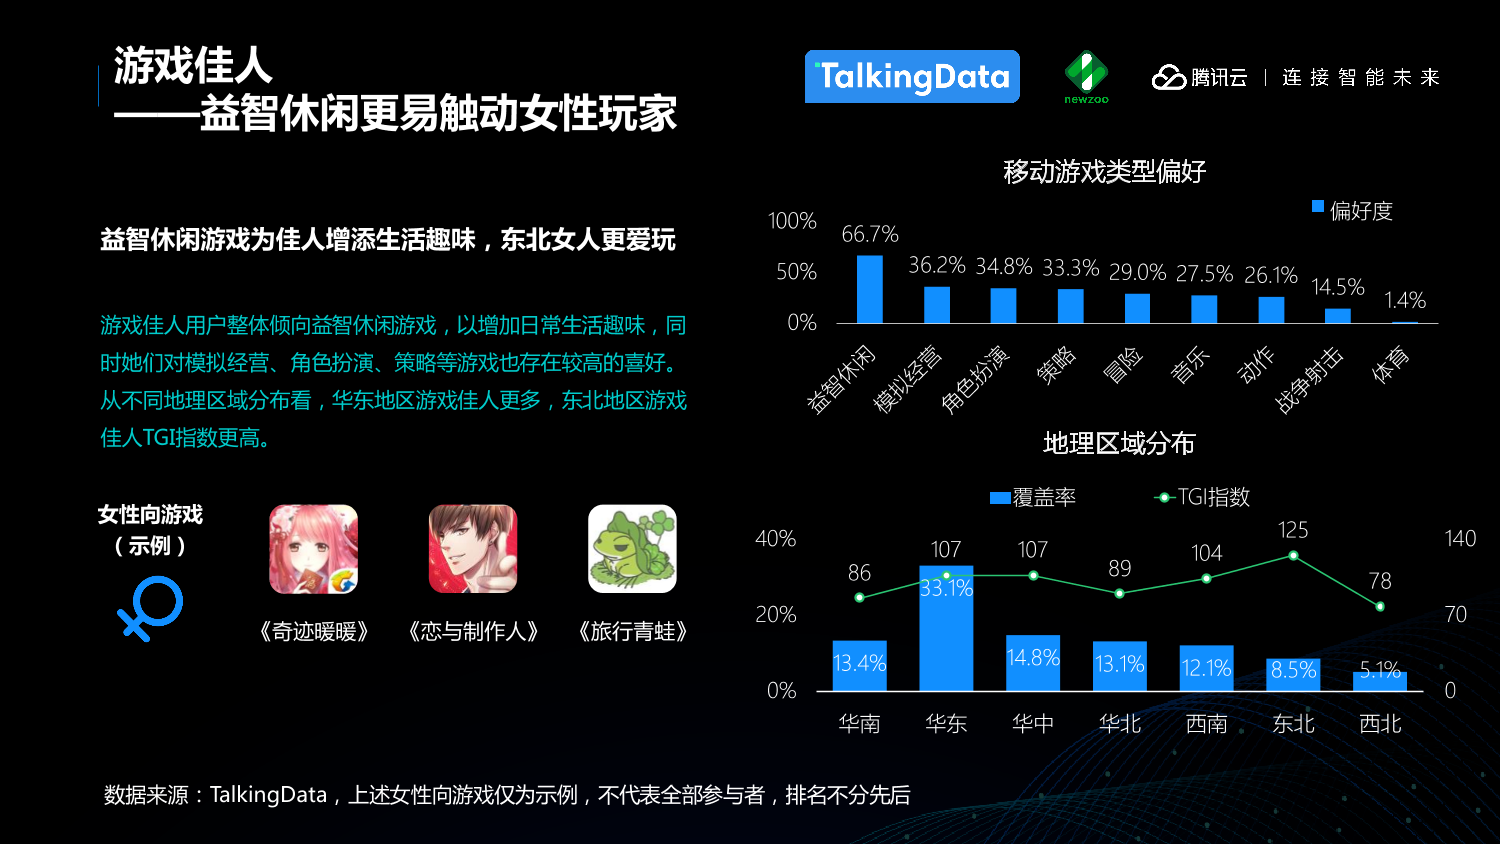 中国移动游戏行业趋势报告_1527559577212-20